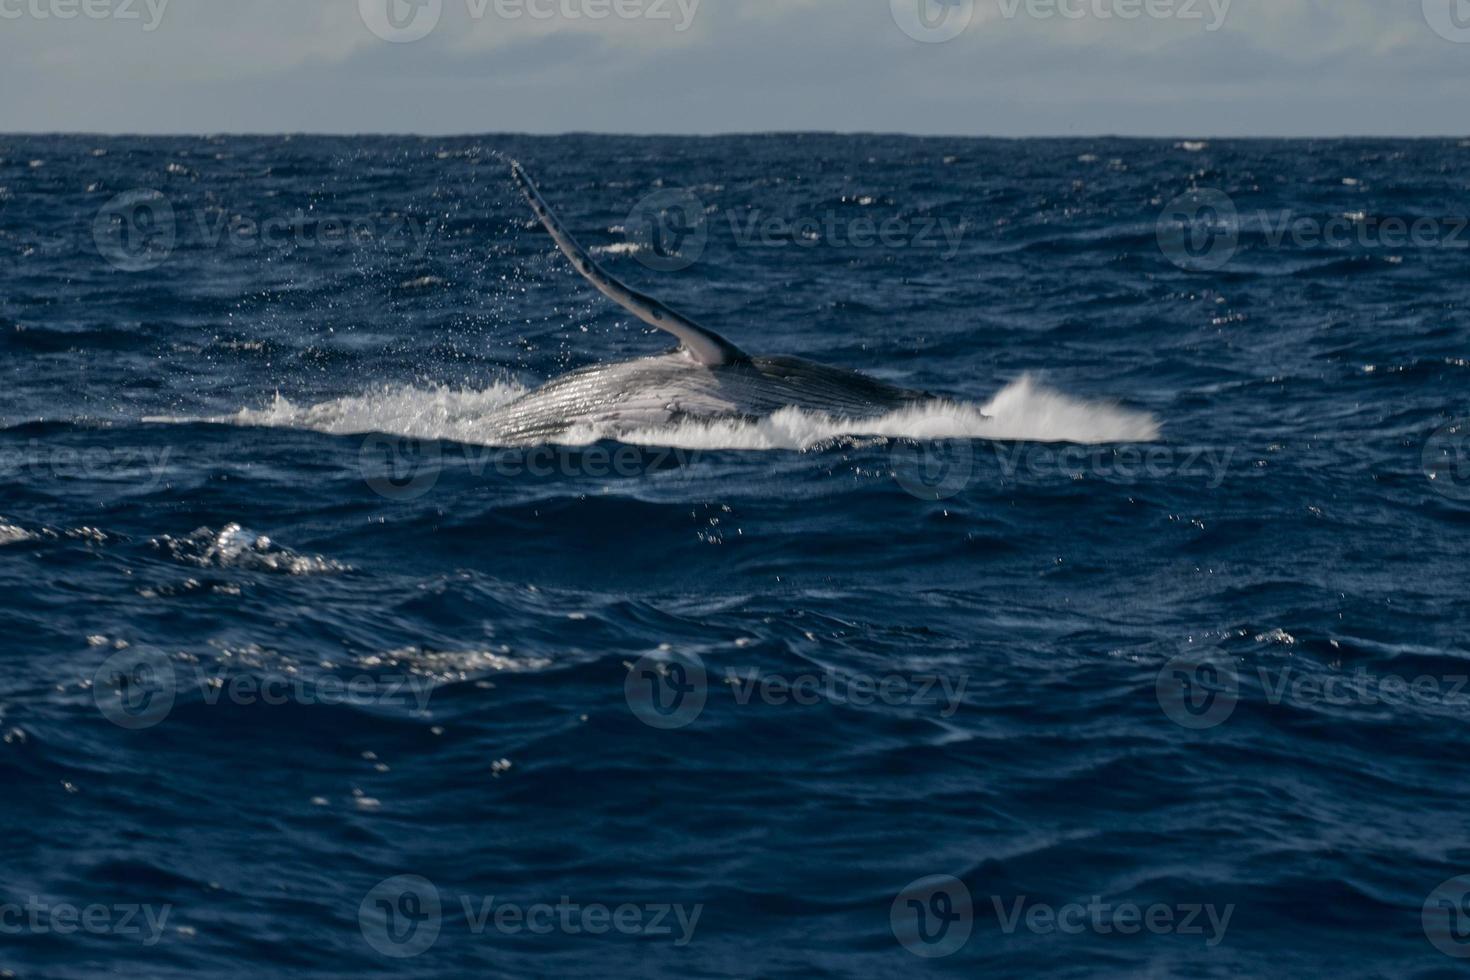 cauda de baleia jubarte descendo no mar azul da polinésia foto